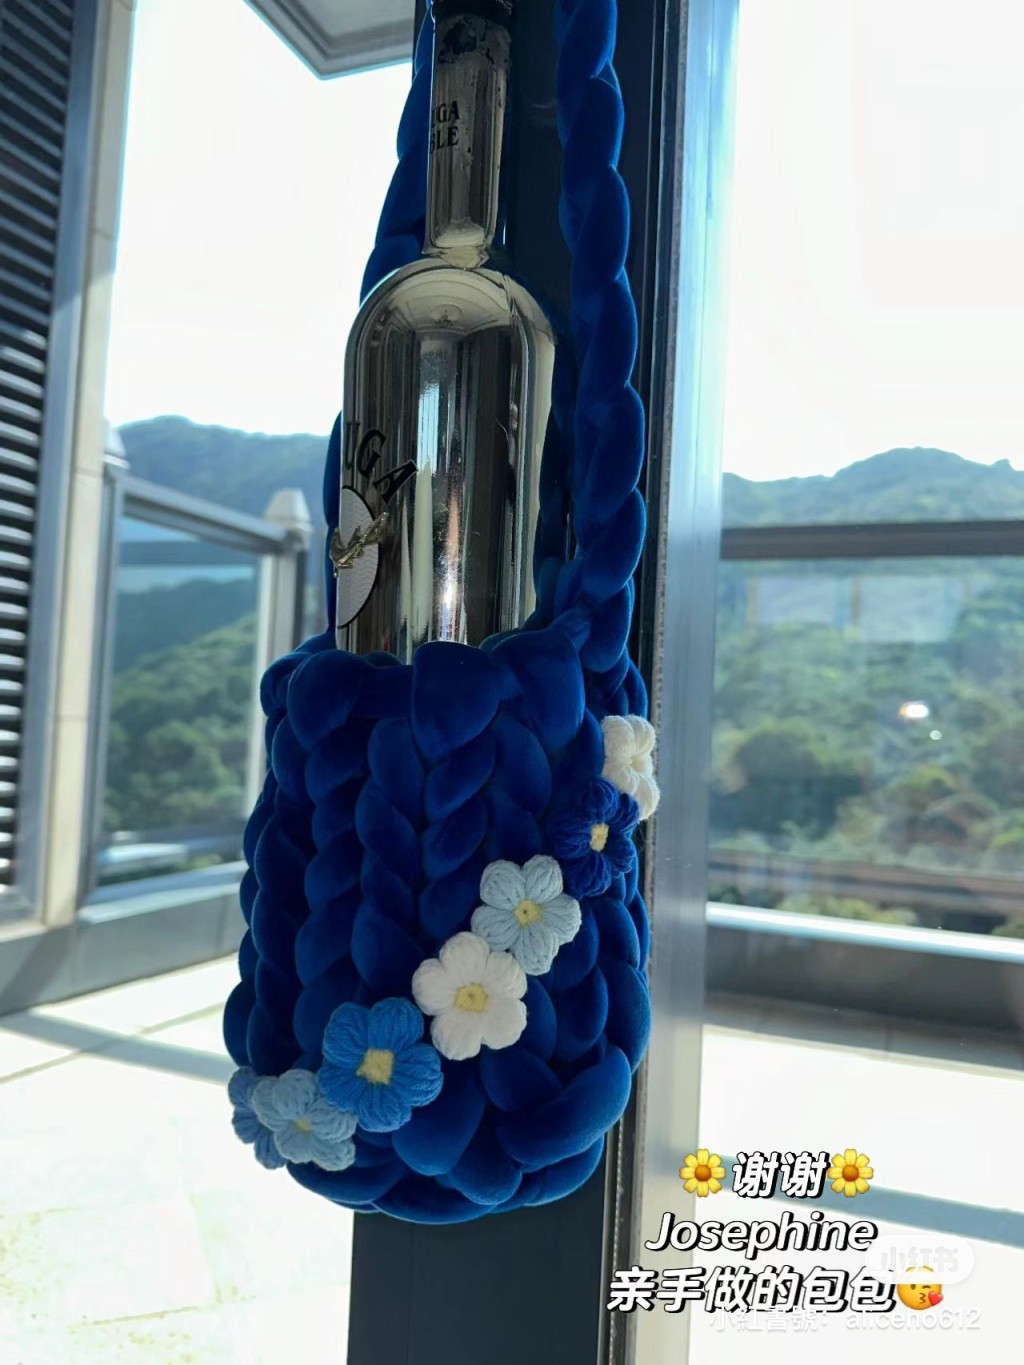 何超欣获甘比大女刘秀桦送上DIY蓝色花花手袋。